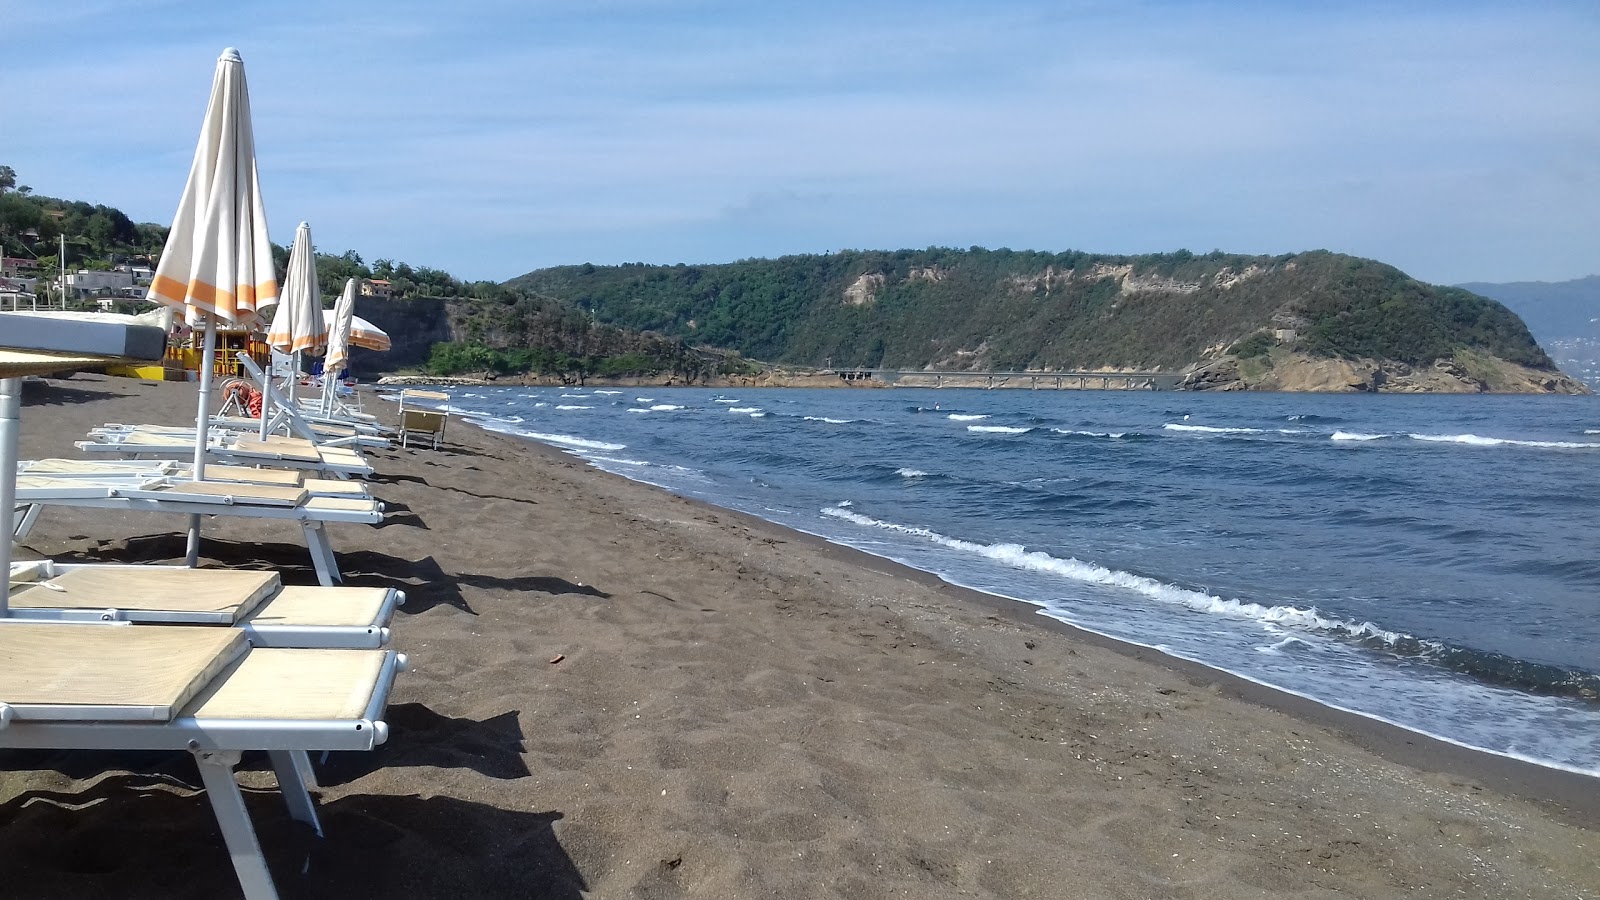 Photo de Spiaggia di Ciraccio - endroit populaire parmi les connaisseurs de la détente